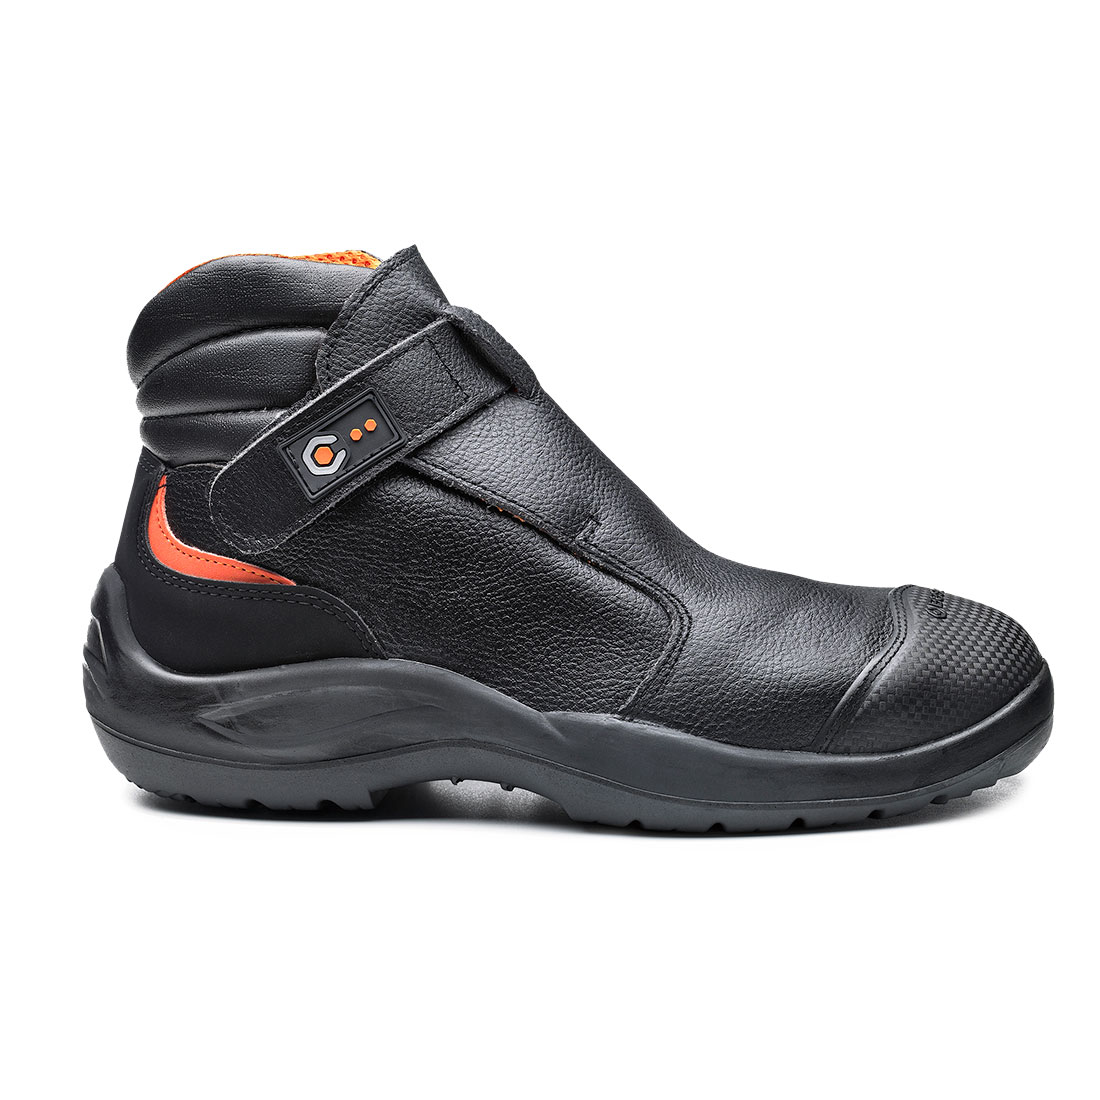 Base Dvorak Ankle Shoes Black B0121